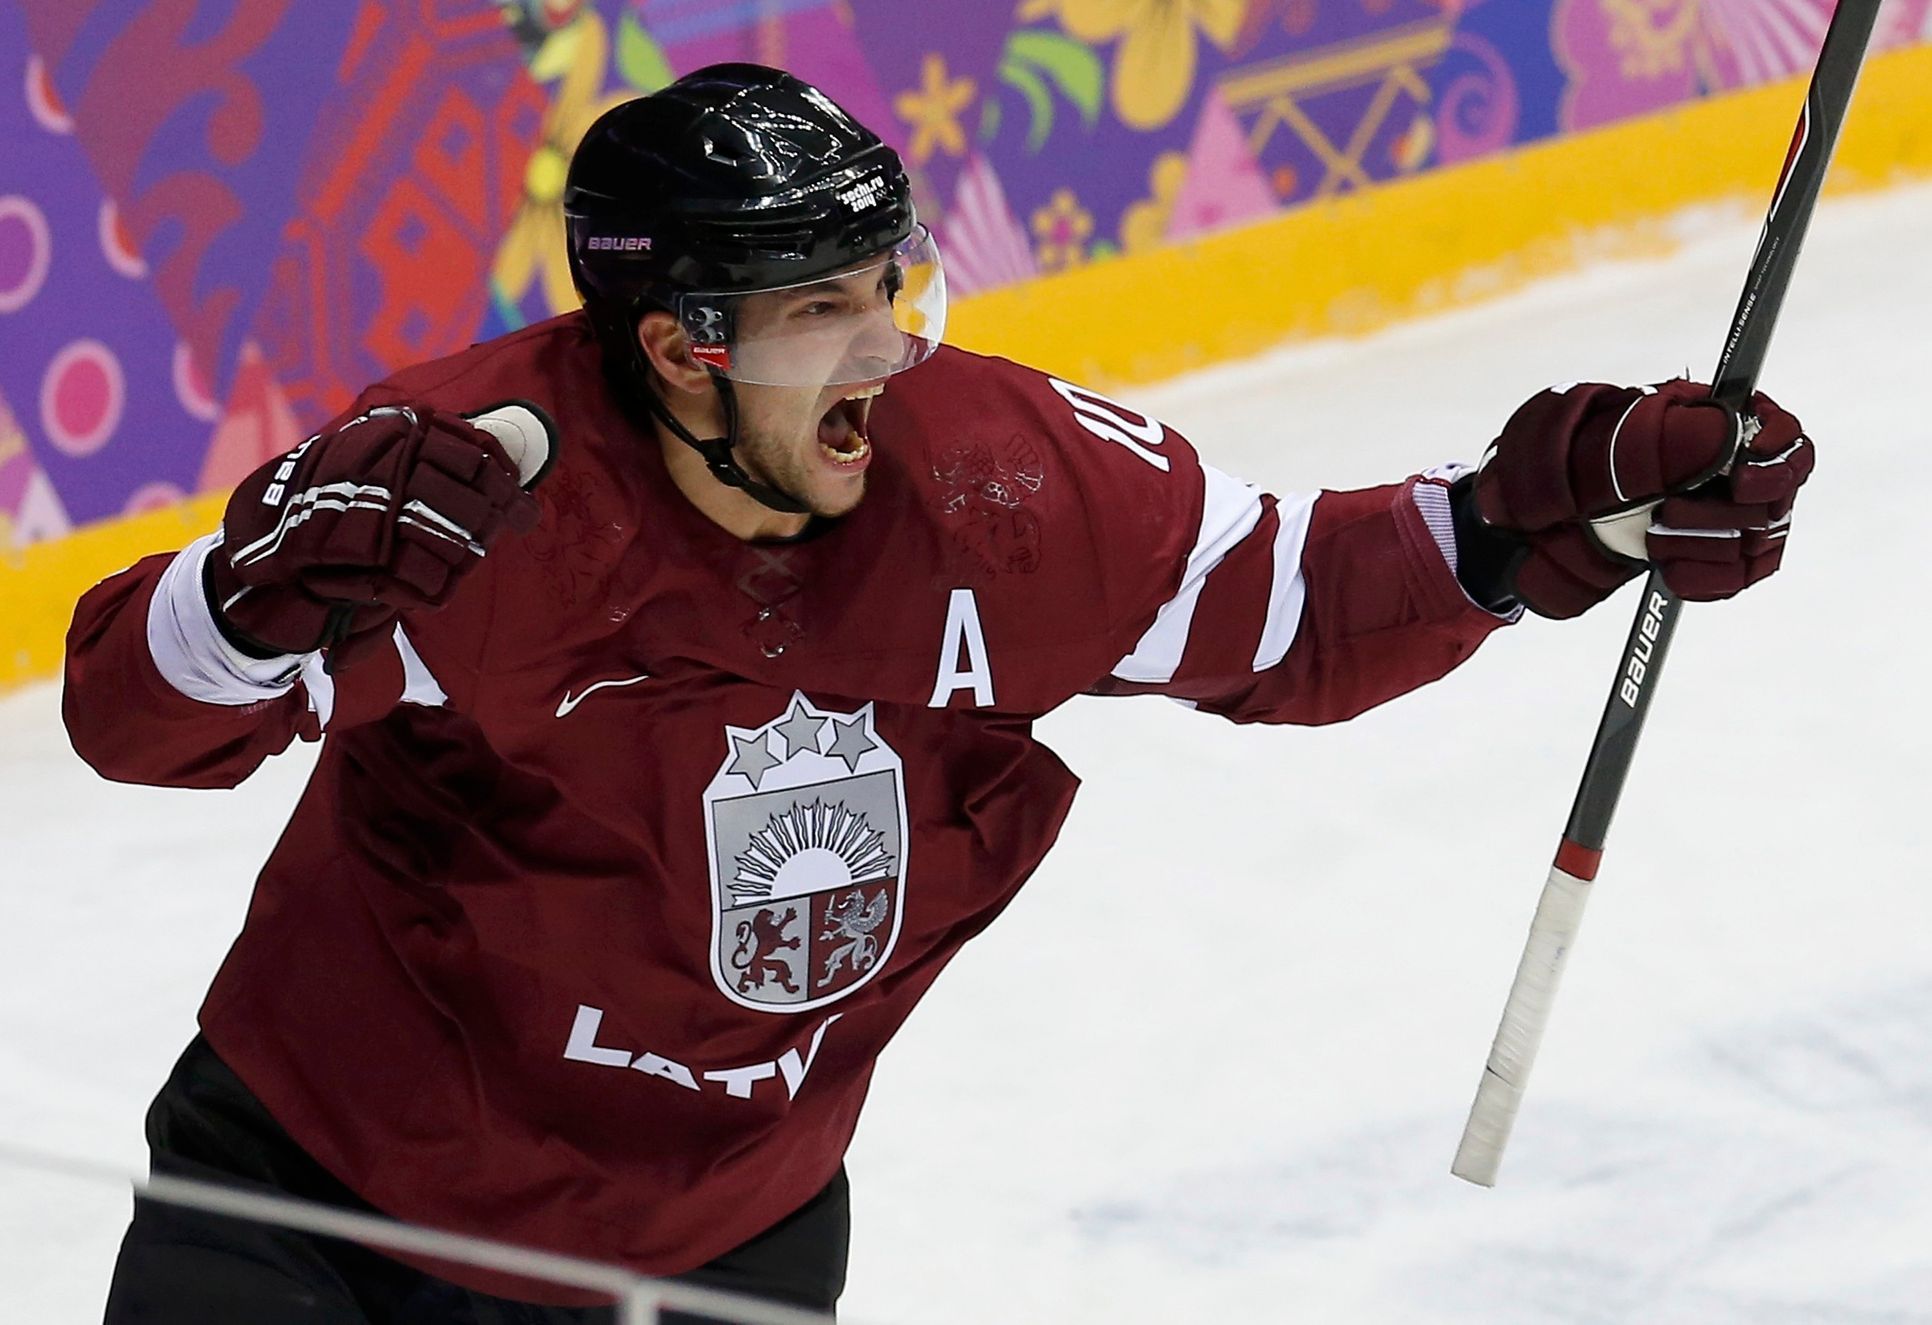 Kanada - Lotyšsko: Lauris Darzins slaví gól